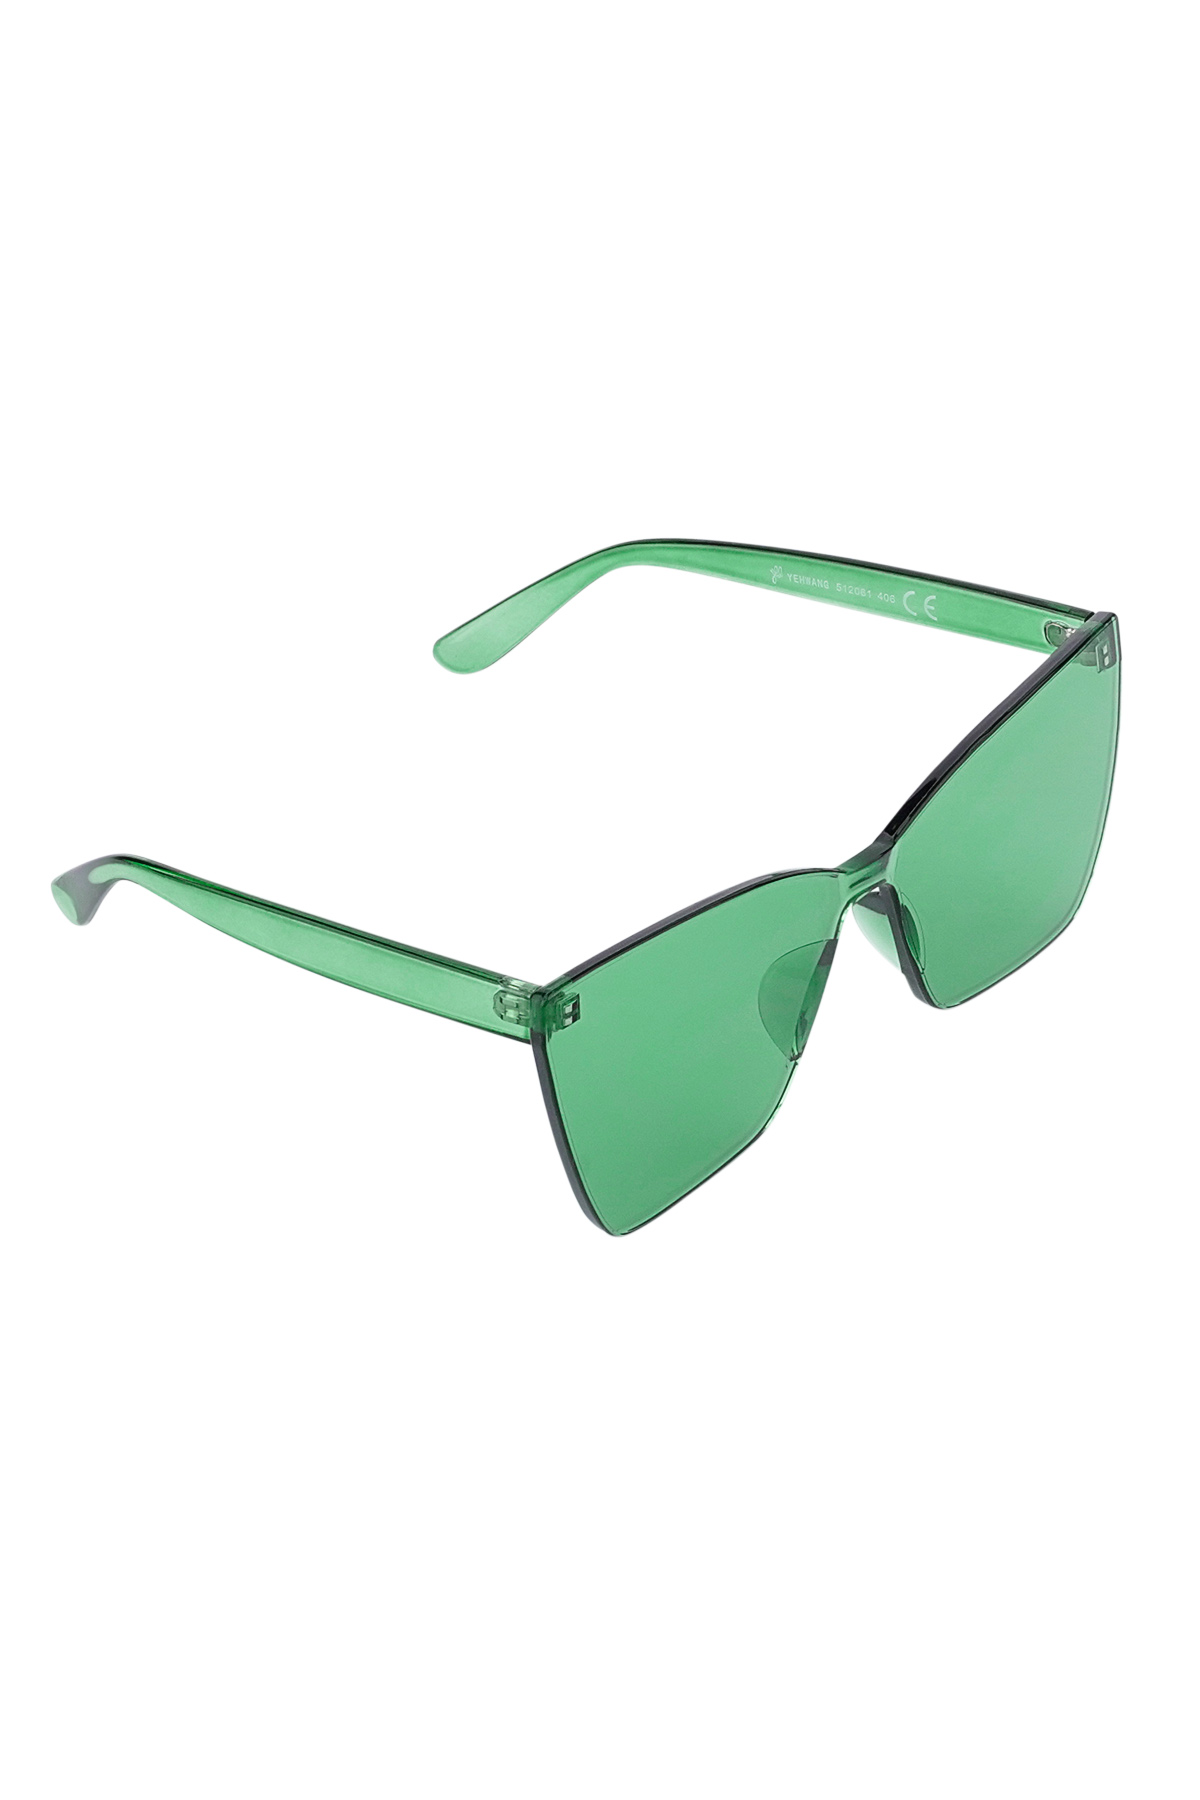 Eenkleurige daily zonnebril - groen